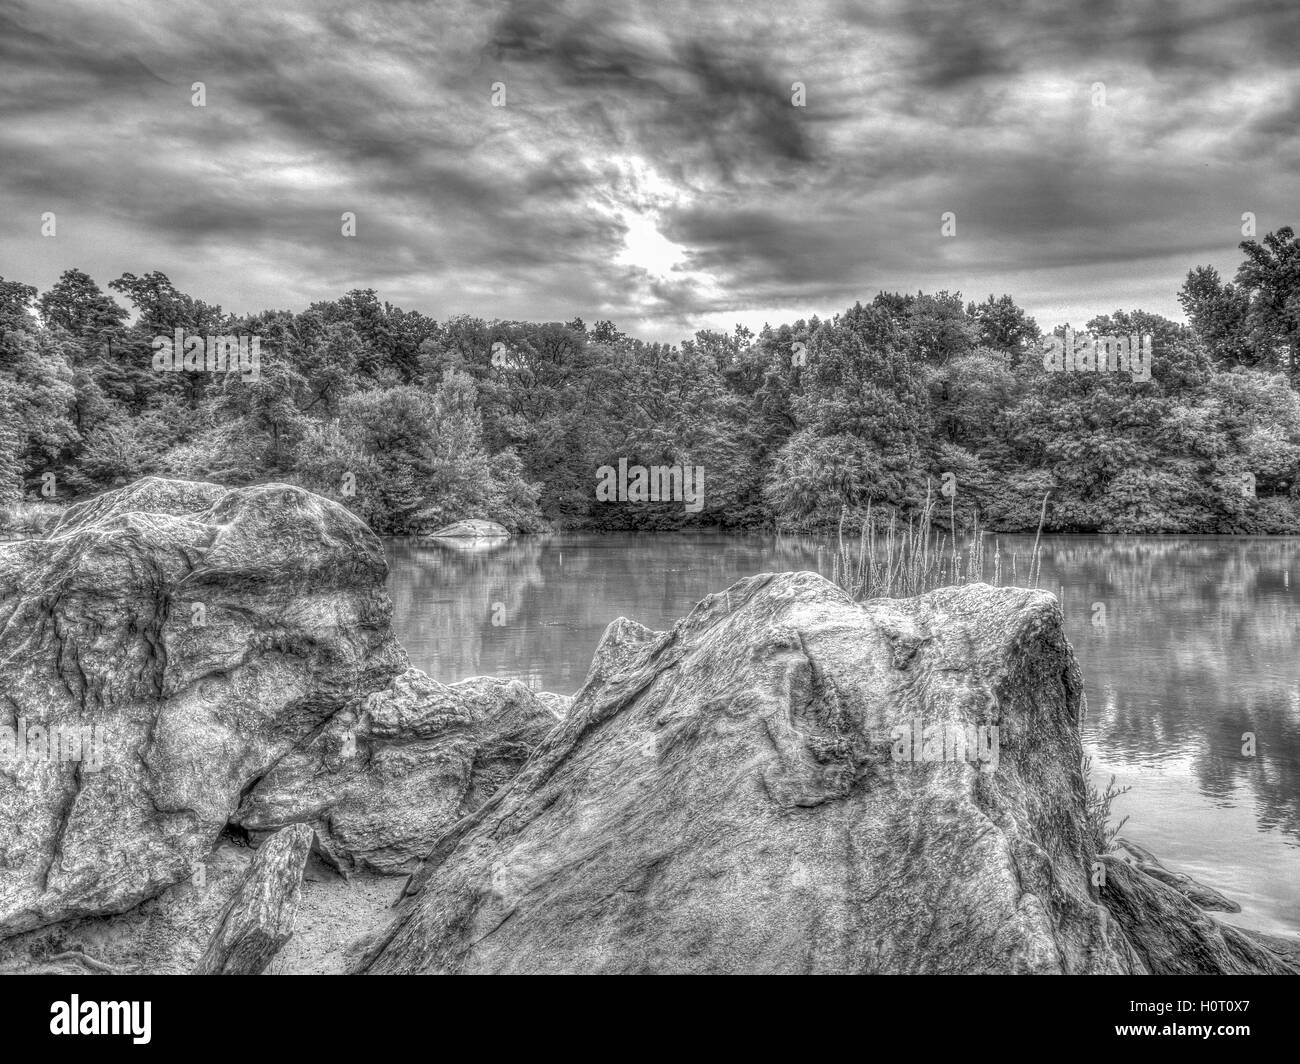 Presso il lago di Central Park di New York City in estate lago di fronte a rocce di grandi dimensioni Foto Stock